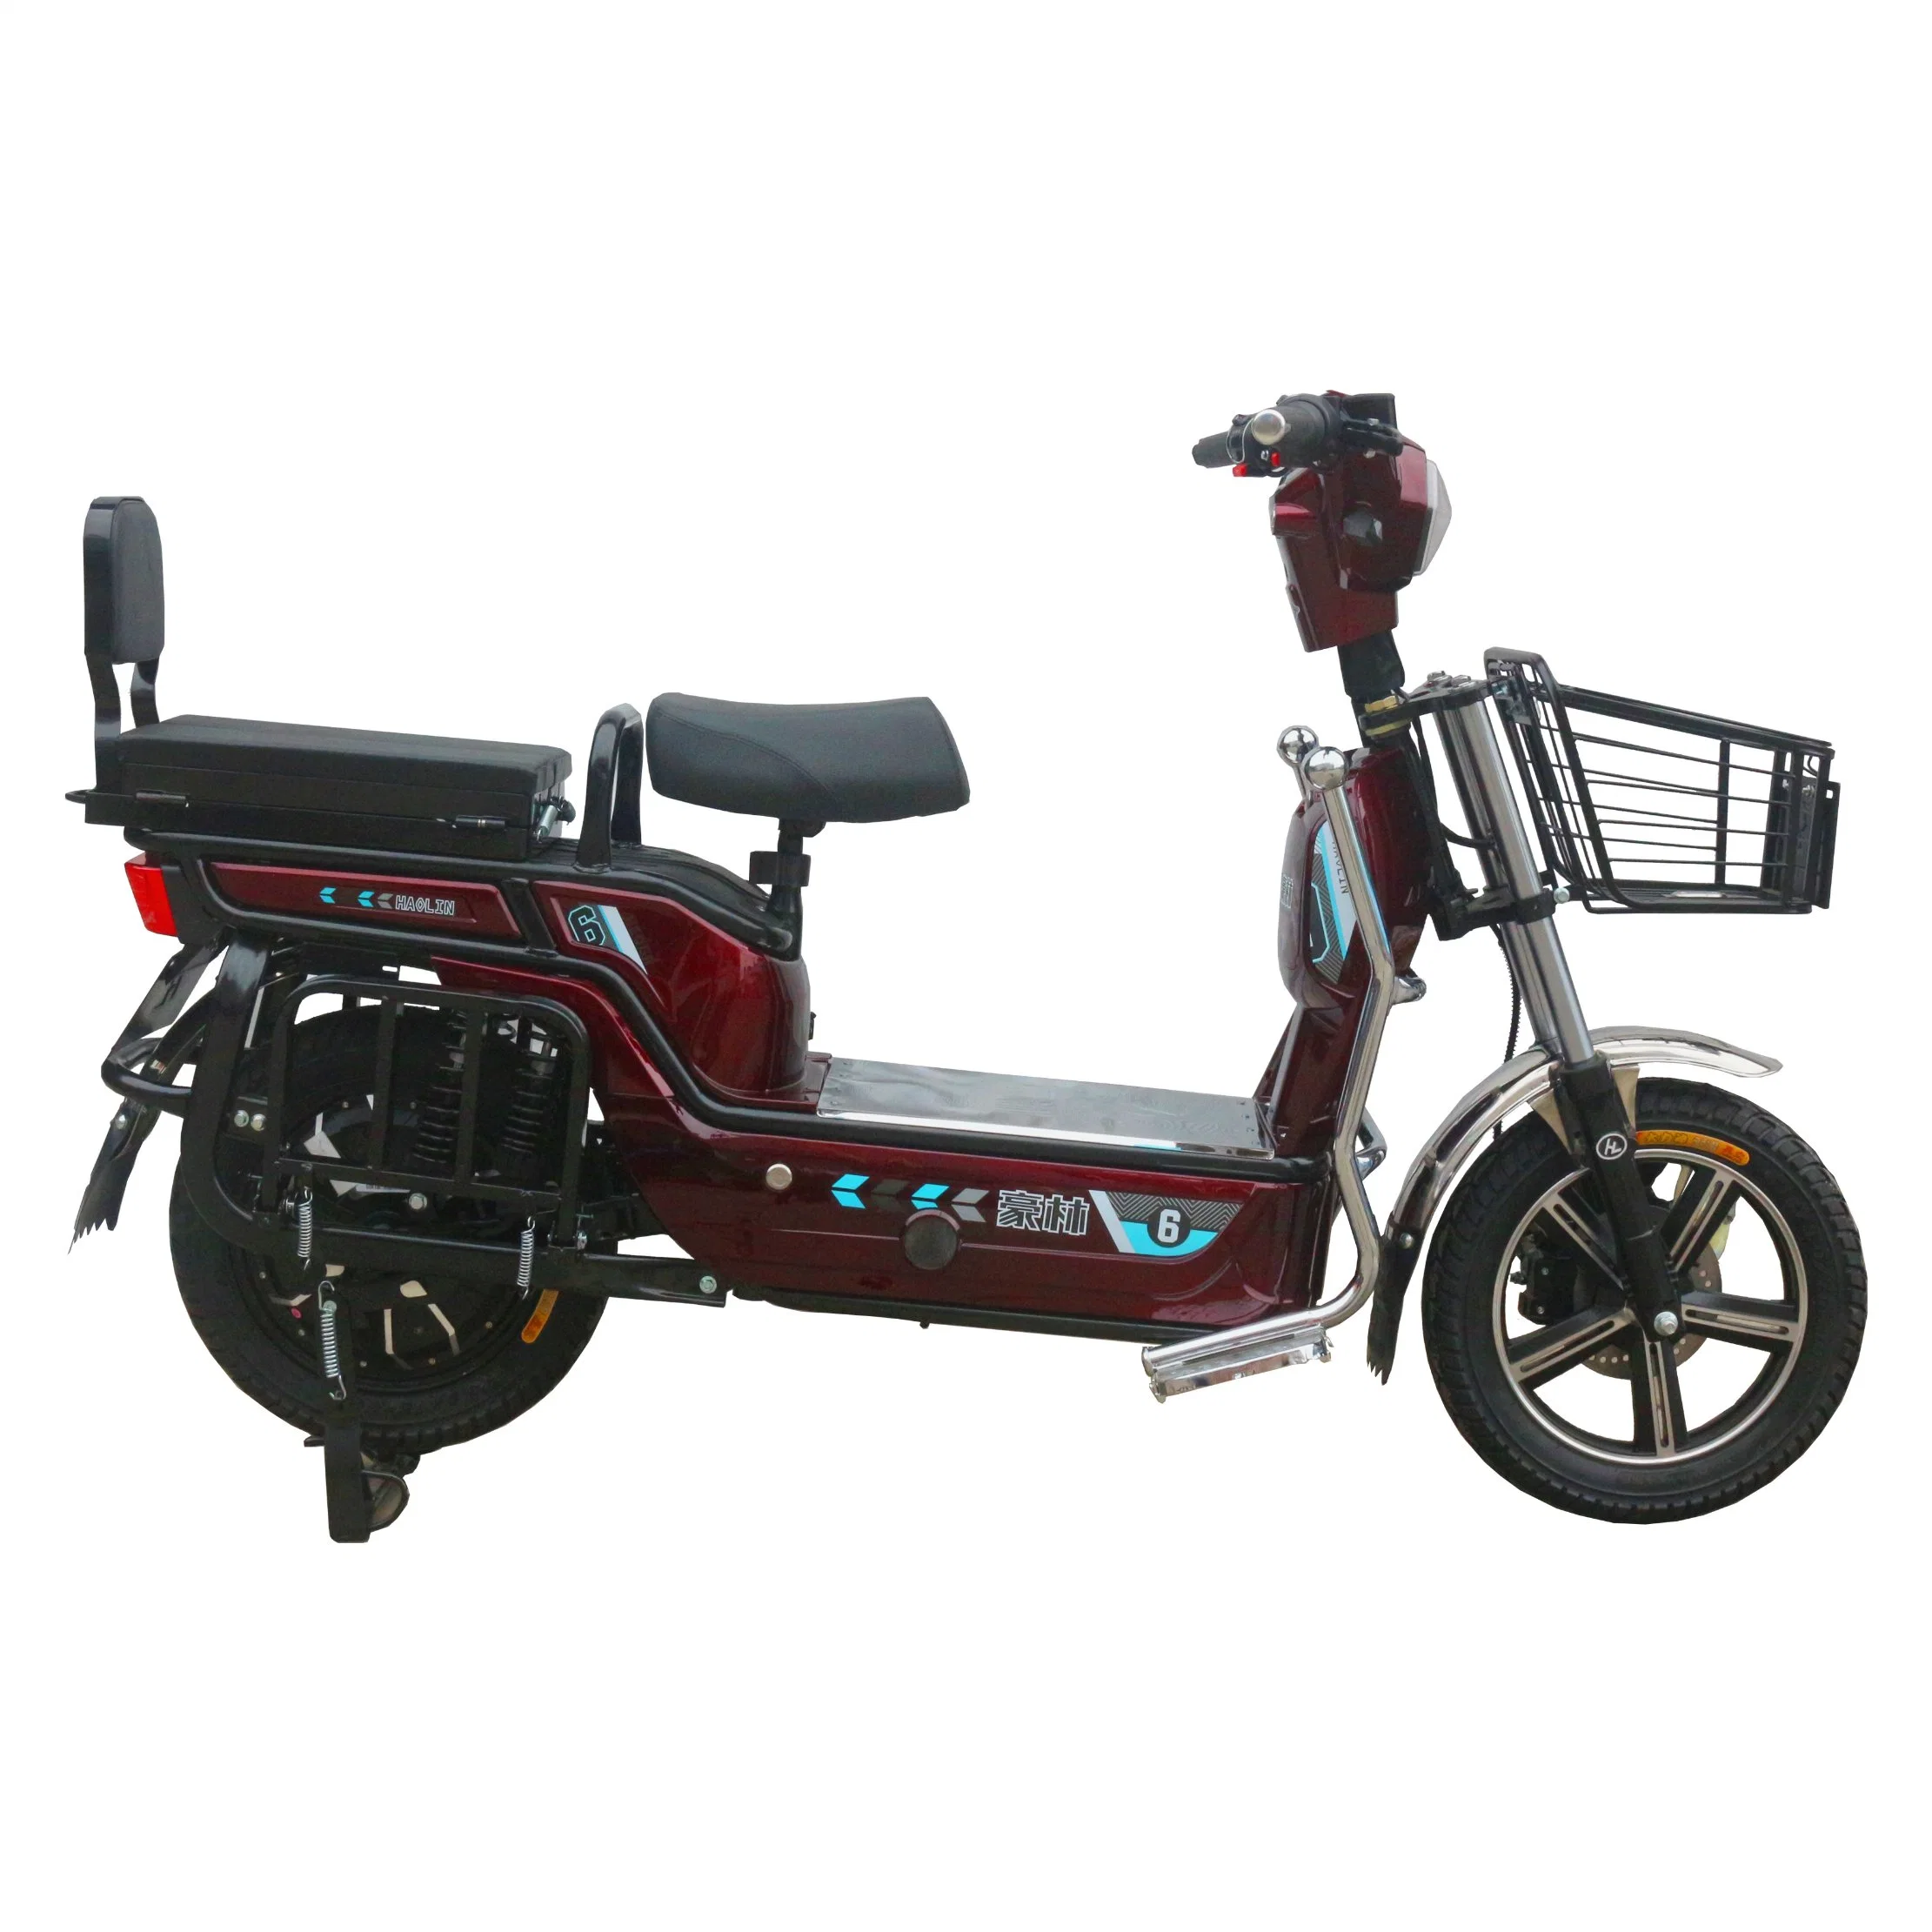 La Chine fournisseur 800W 72V 45km/h Absorption des chocs avant et arrière adulte E-scooter moto vélo pour voyages quotidiens